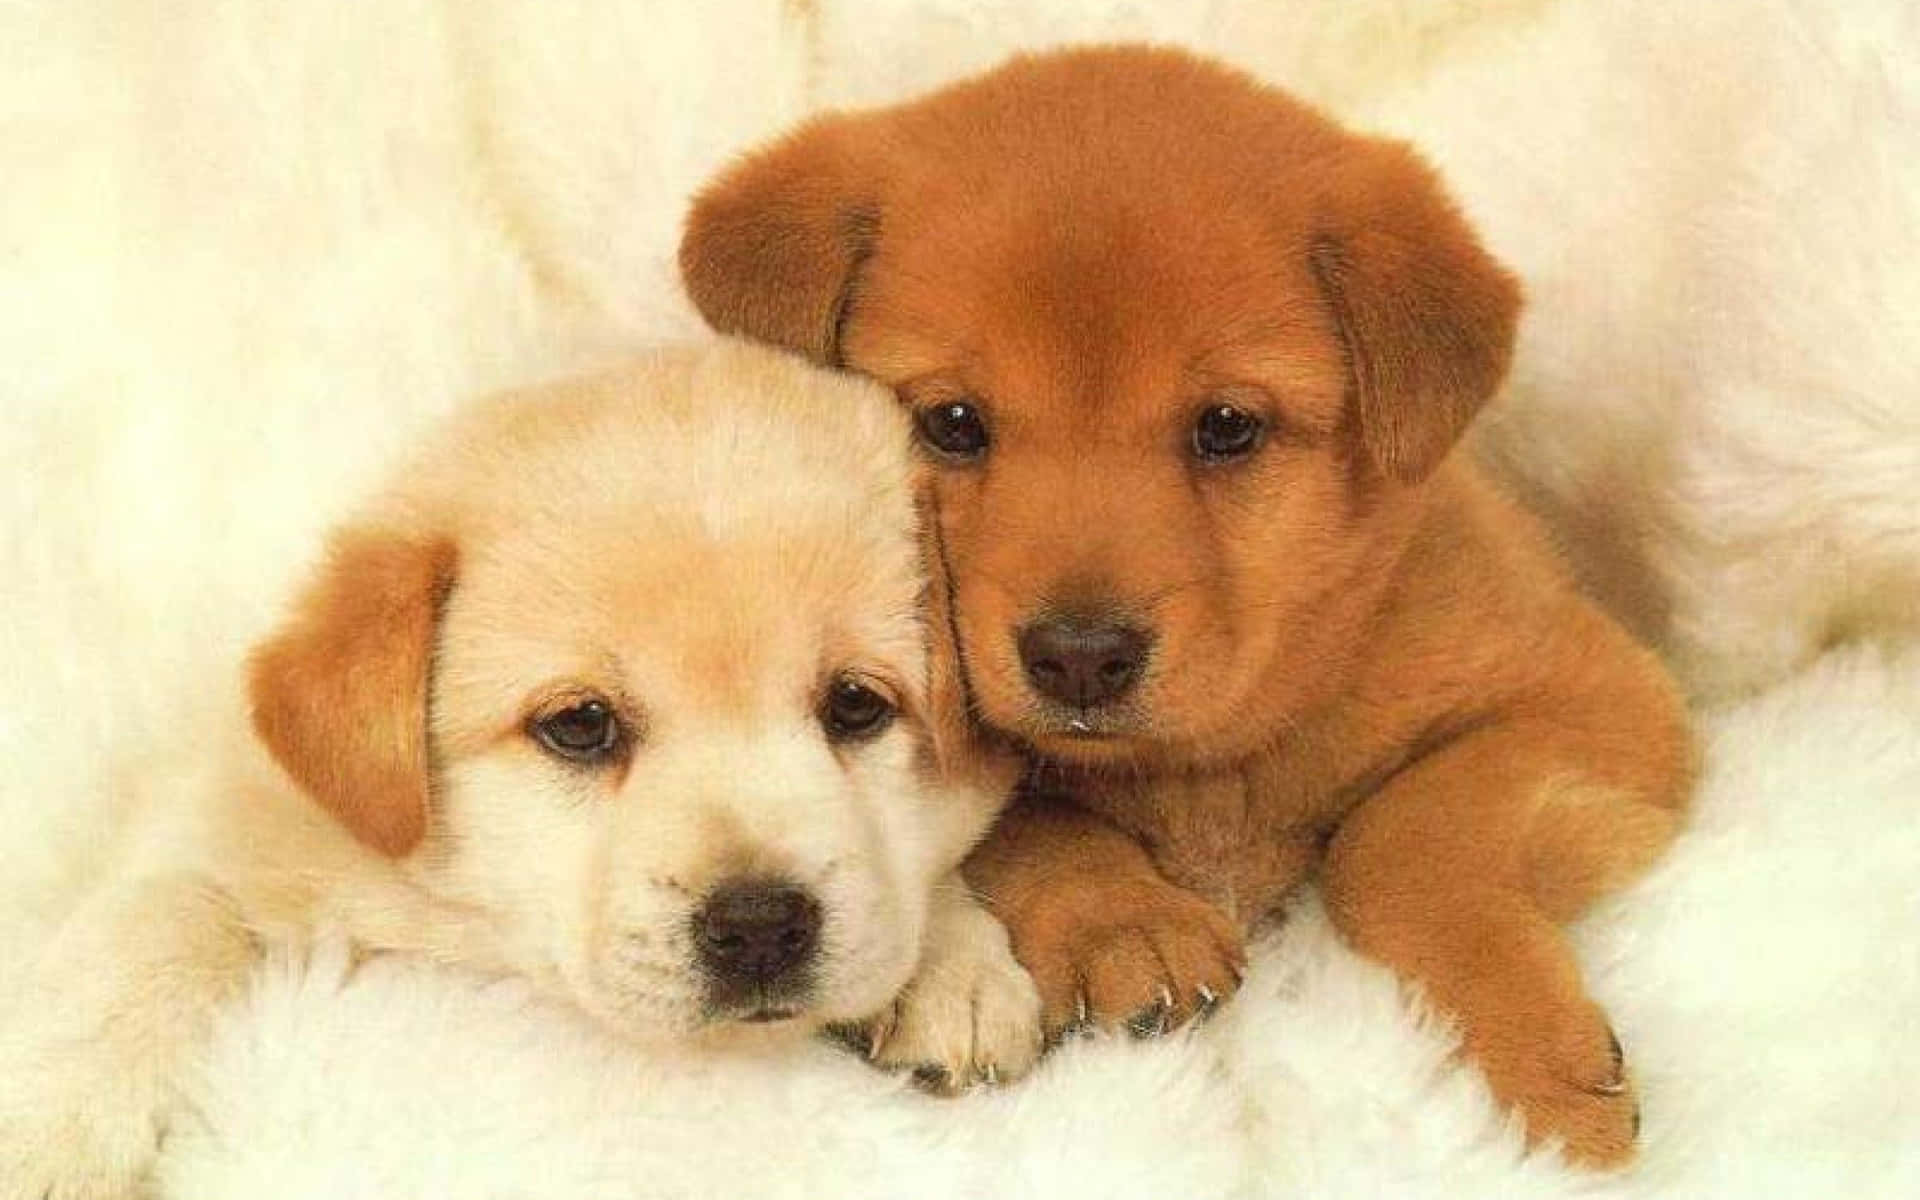 Cute Little Puppies Wallpaper